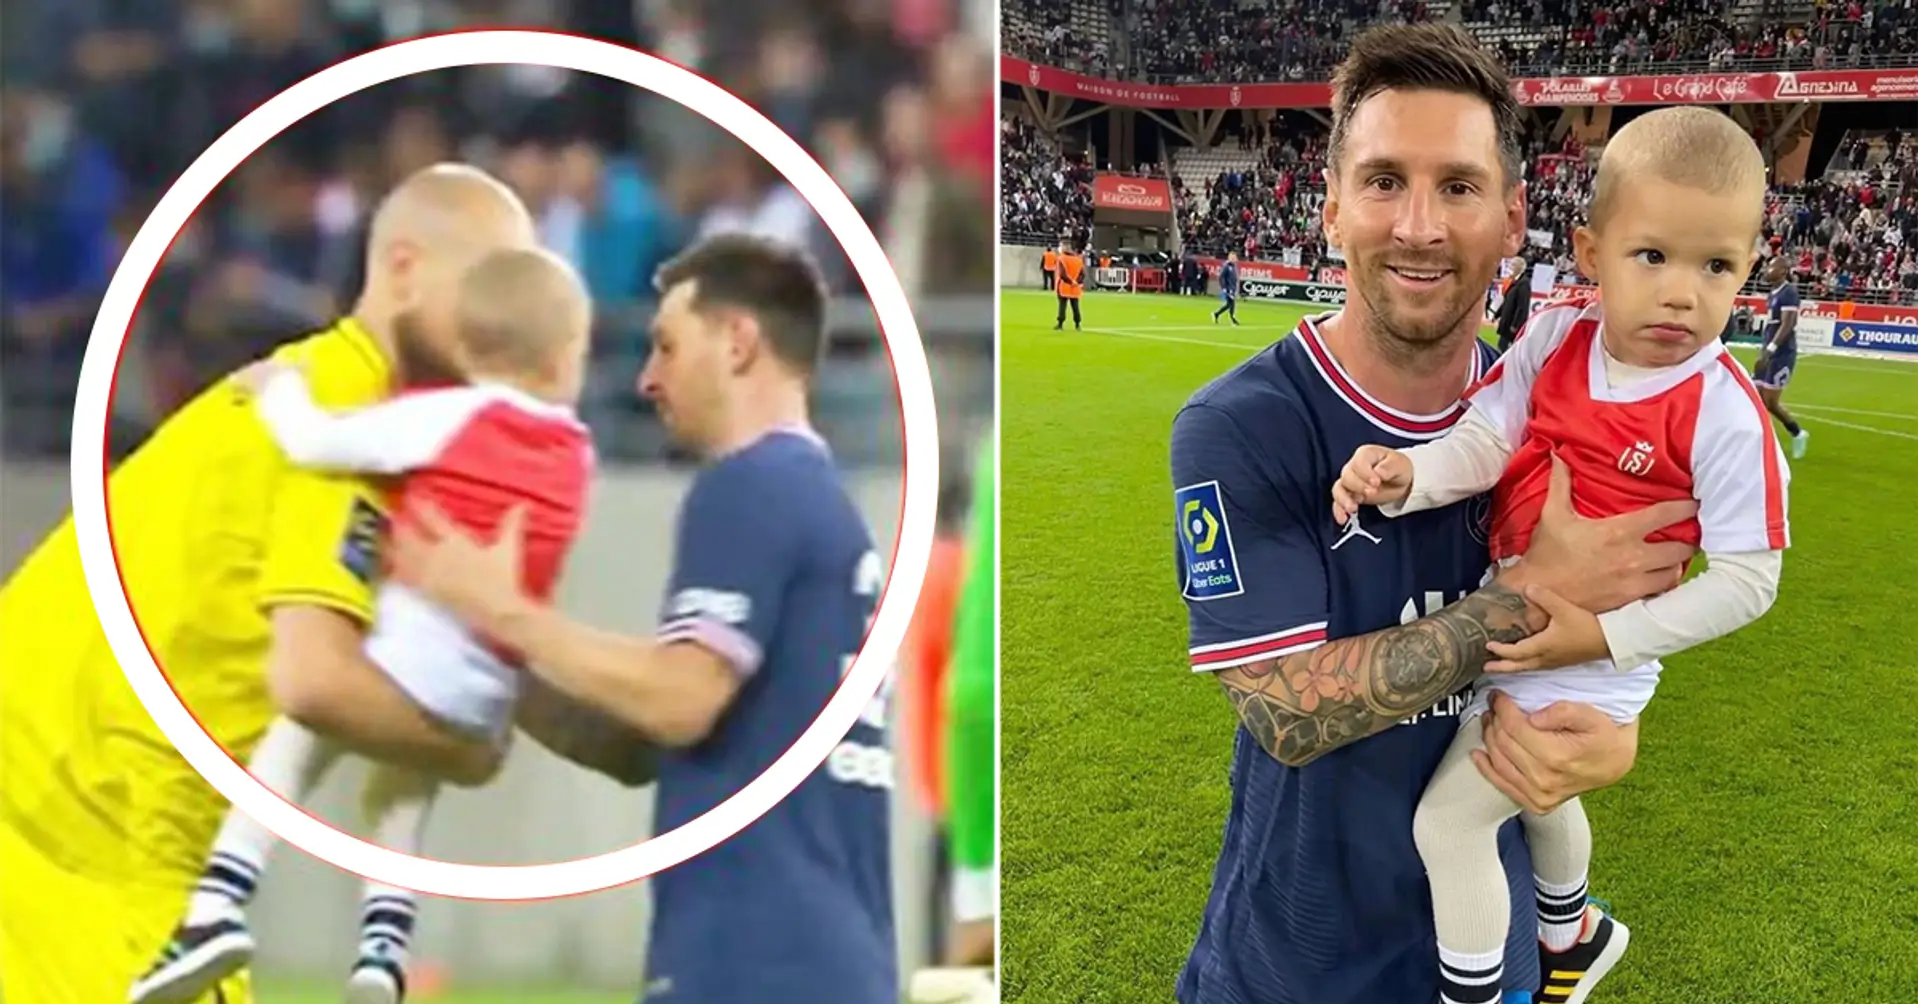 Von Kamera erwischt: Reims-Torwart bittet Leo Messi um ein Foto mit seinem Sohn